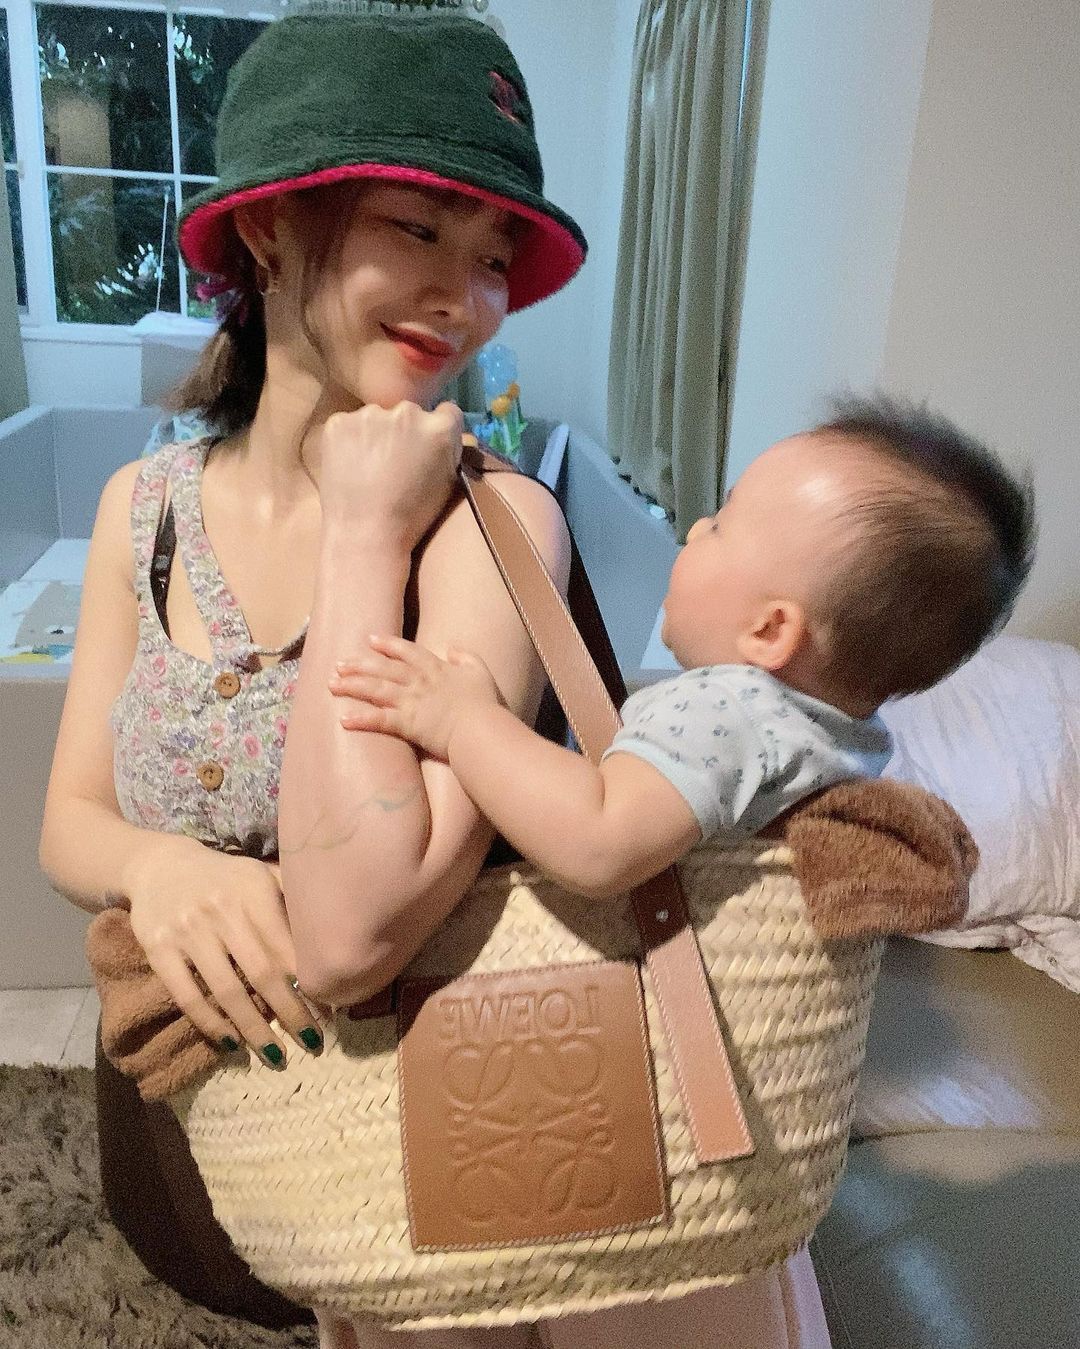 不过火辣美女的追求者可是很多的，想试试冲一发的帅哥只能失望了，陈美贤也早早被追走走入家庭，在2020年也升格当母亲了！